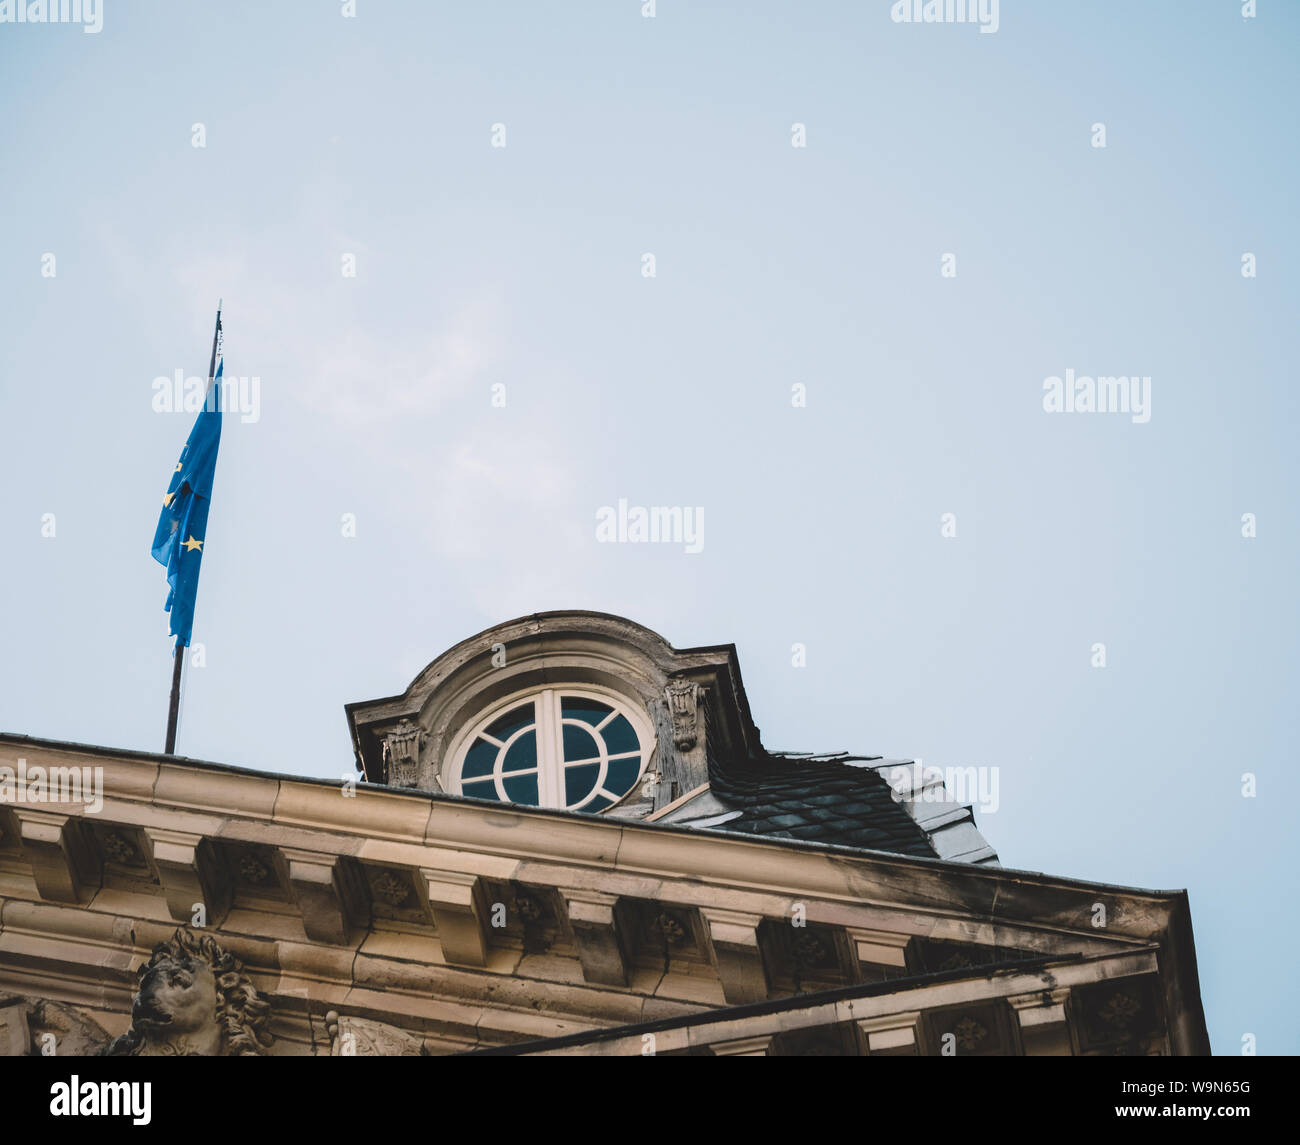 Vintage filtre plus de brandir le drapeau bleu de l'Union européenne  calmement sur le toit du Palais des Rohan à Strasbourg avec de belles  fenêtre ouvragée et ciel bleu clair Photo Stock -